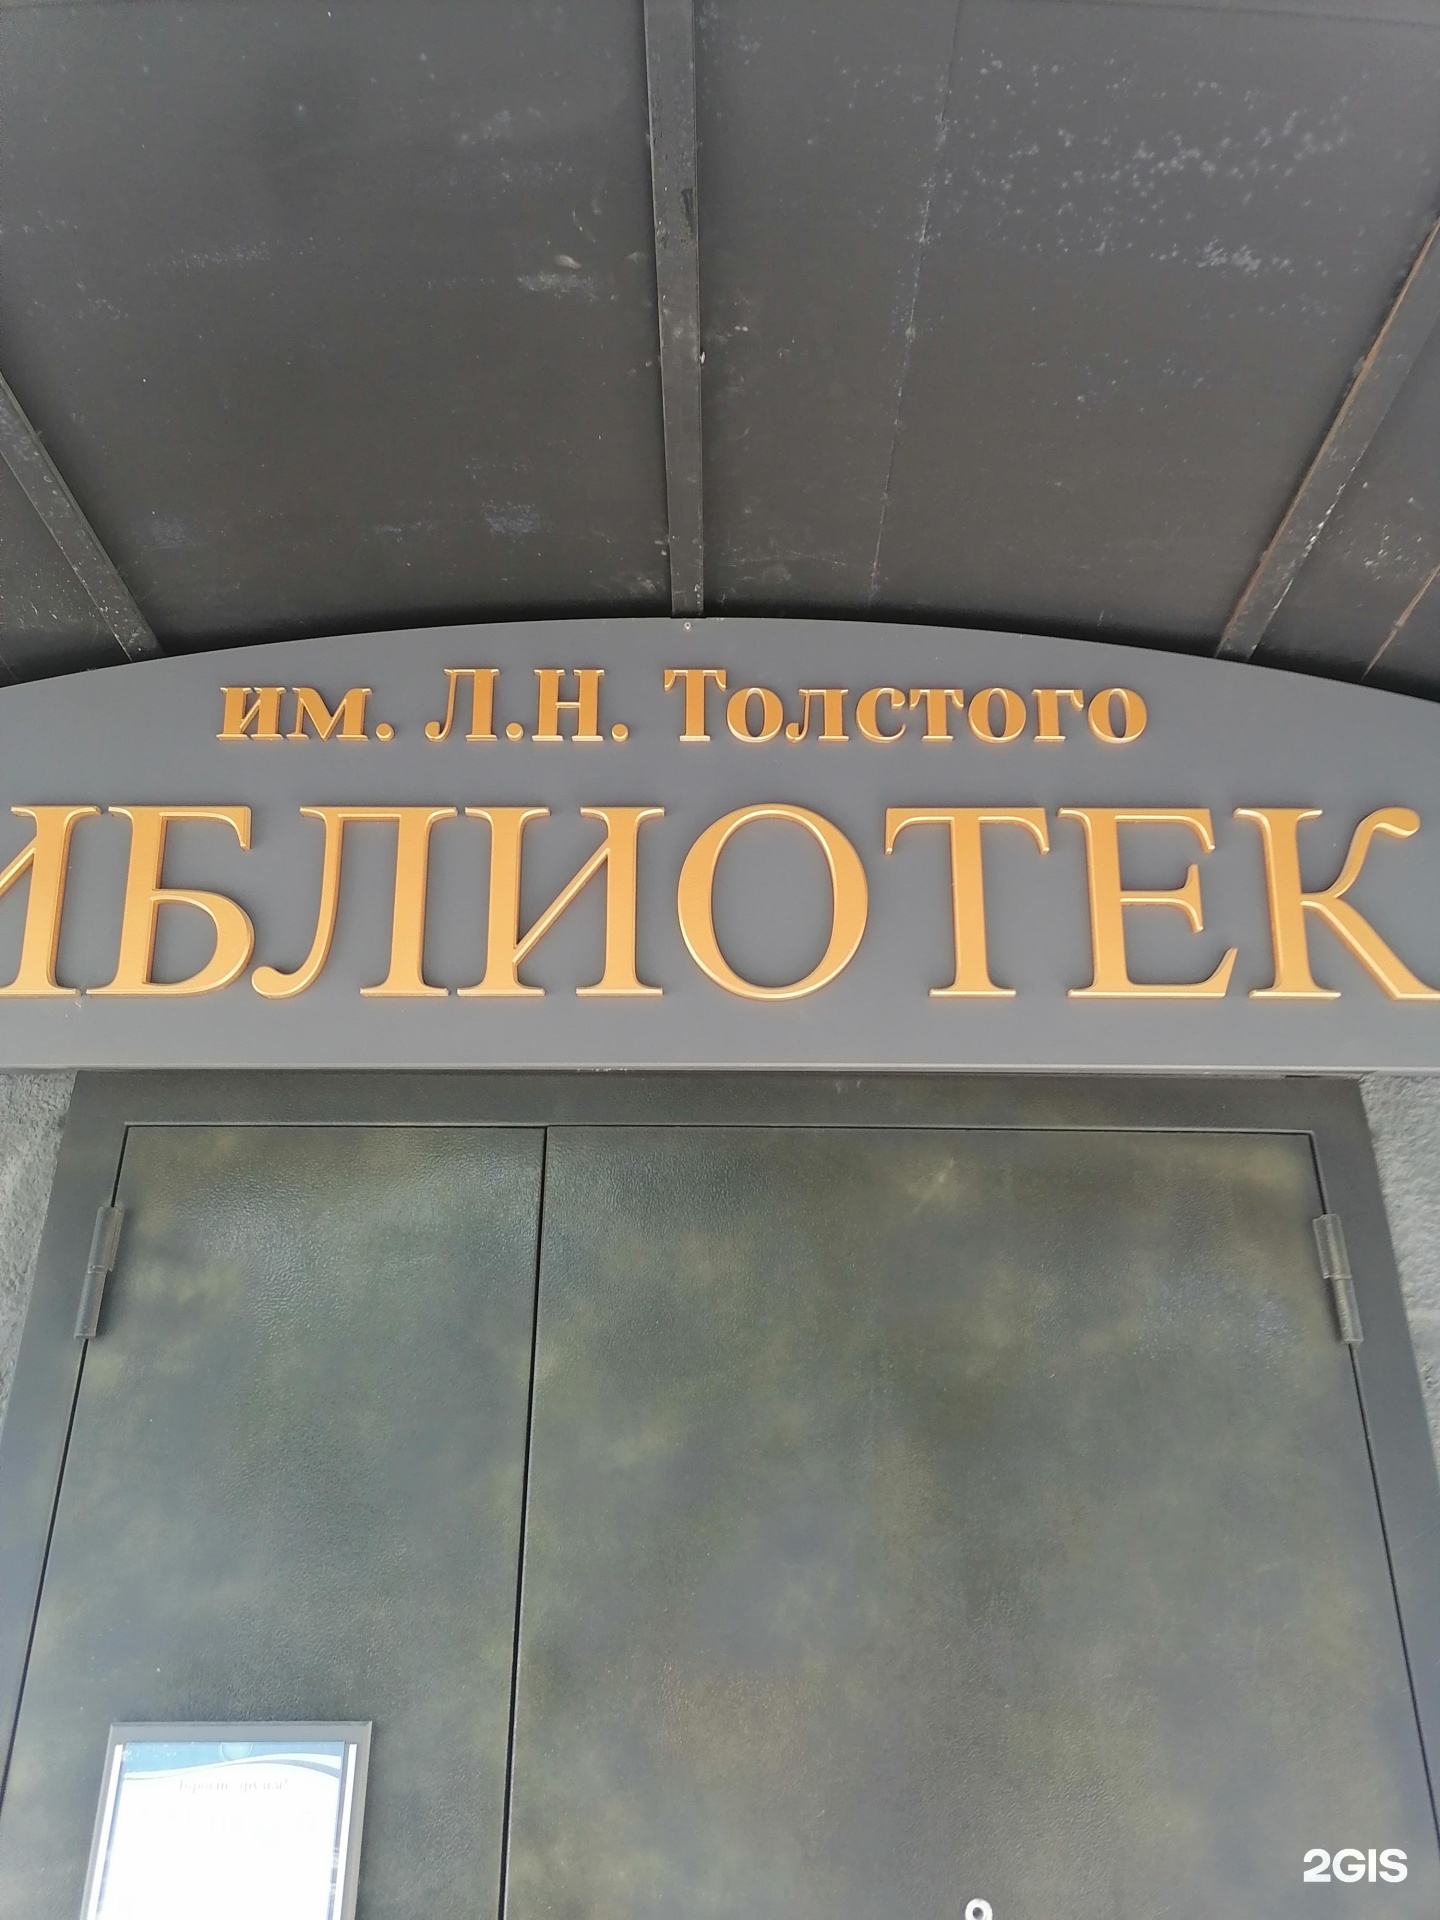 Библиотека Новосибирска имени л.н.Толстого. Библиотека им л н Толстого Новосибирск. Библиотеке н Толстого НСК. Ул толстого новосибирск